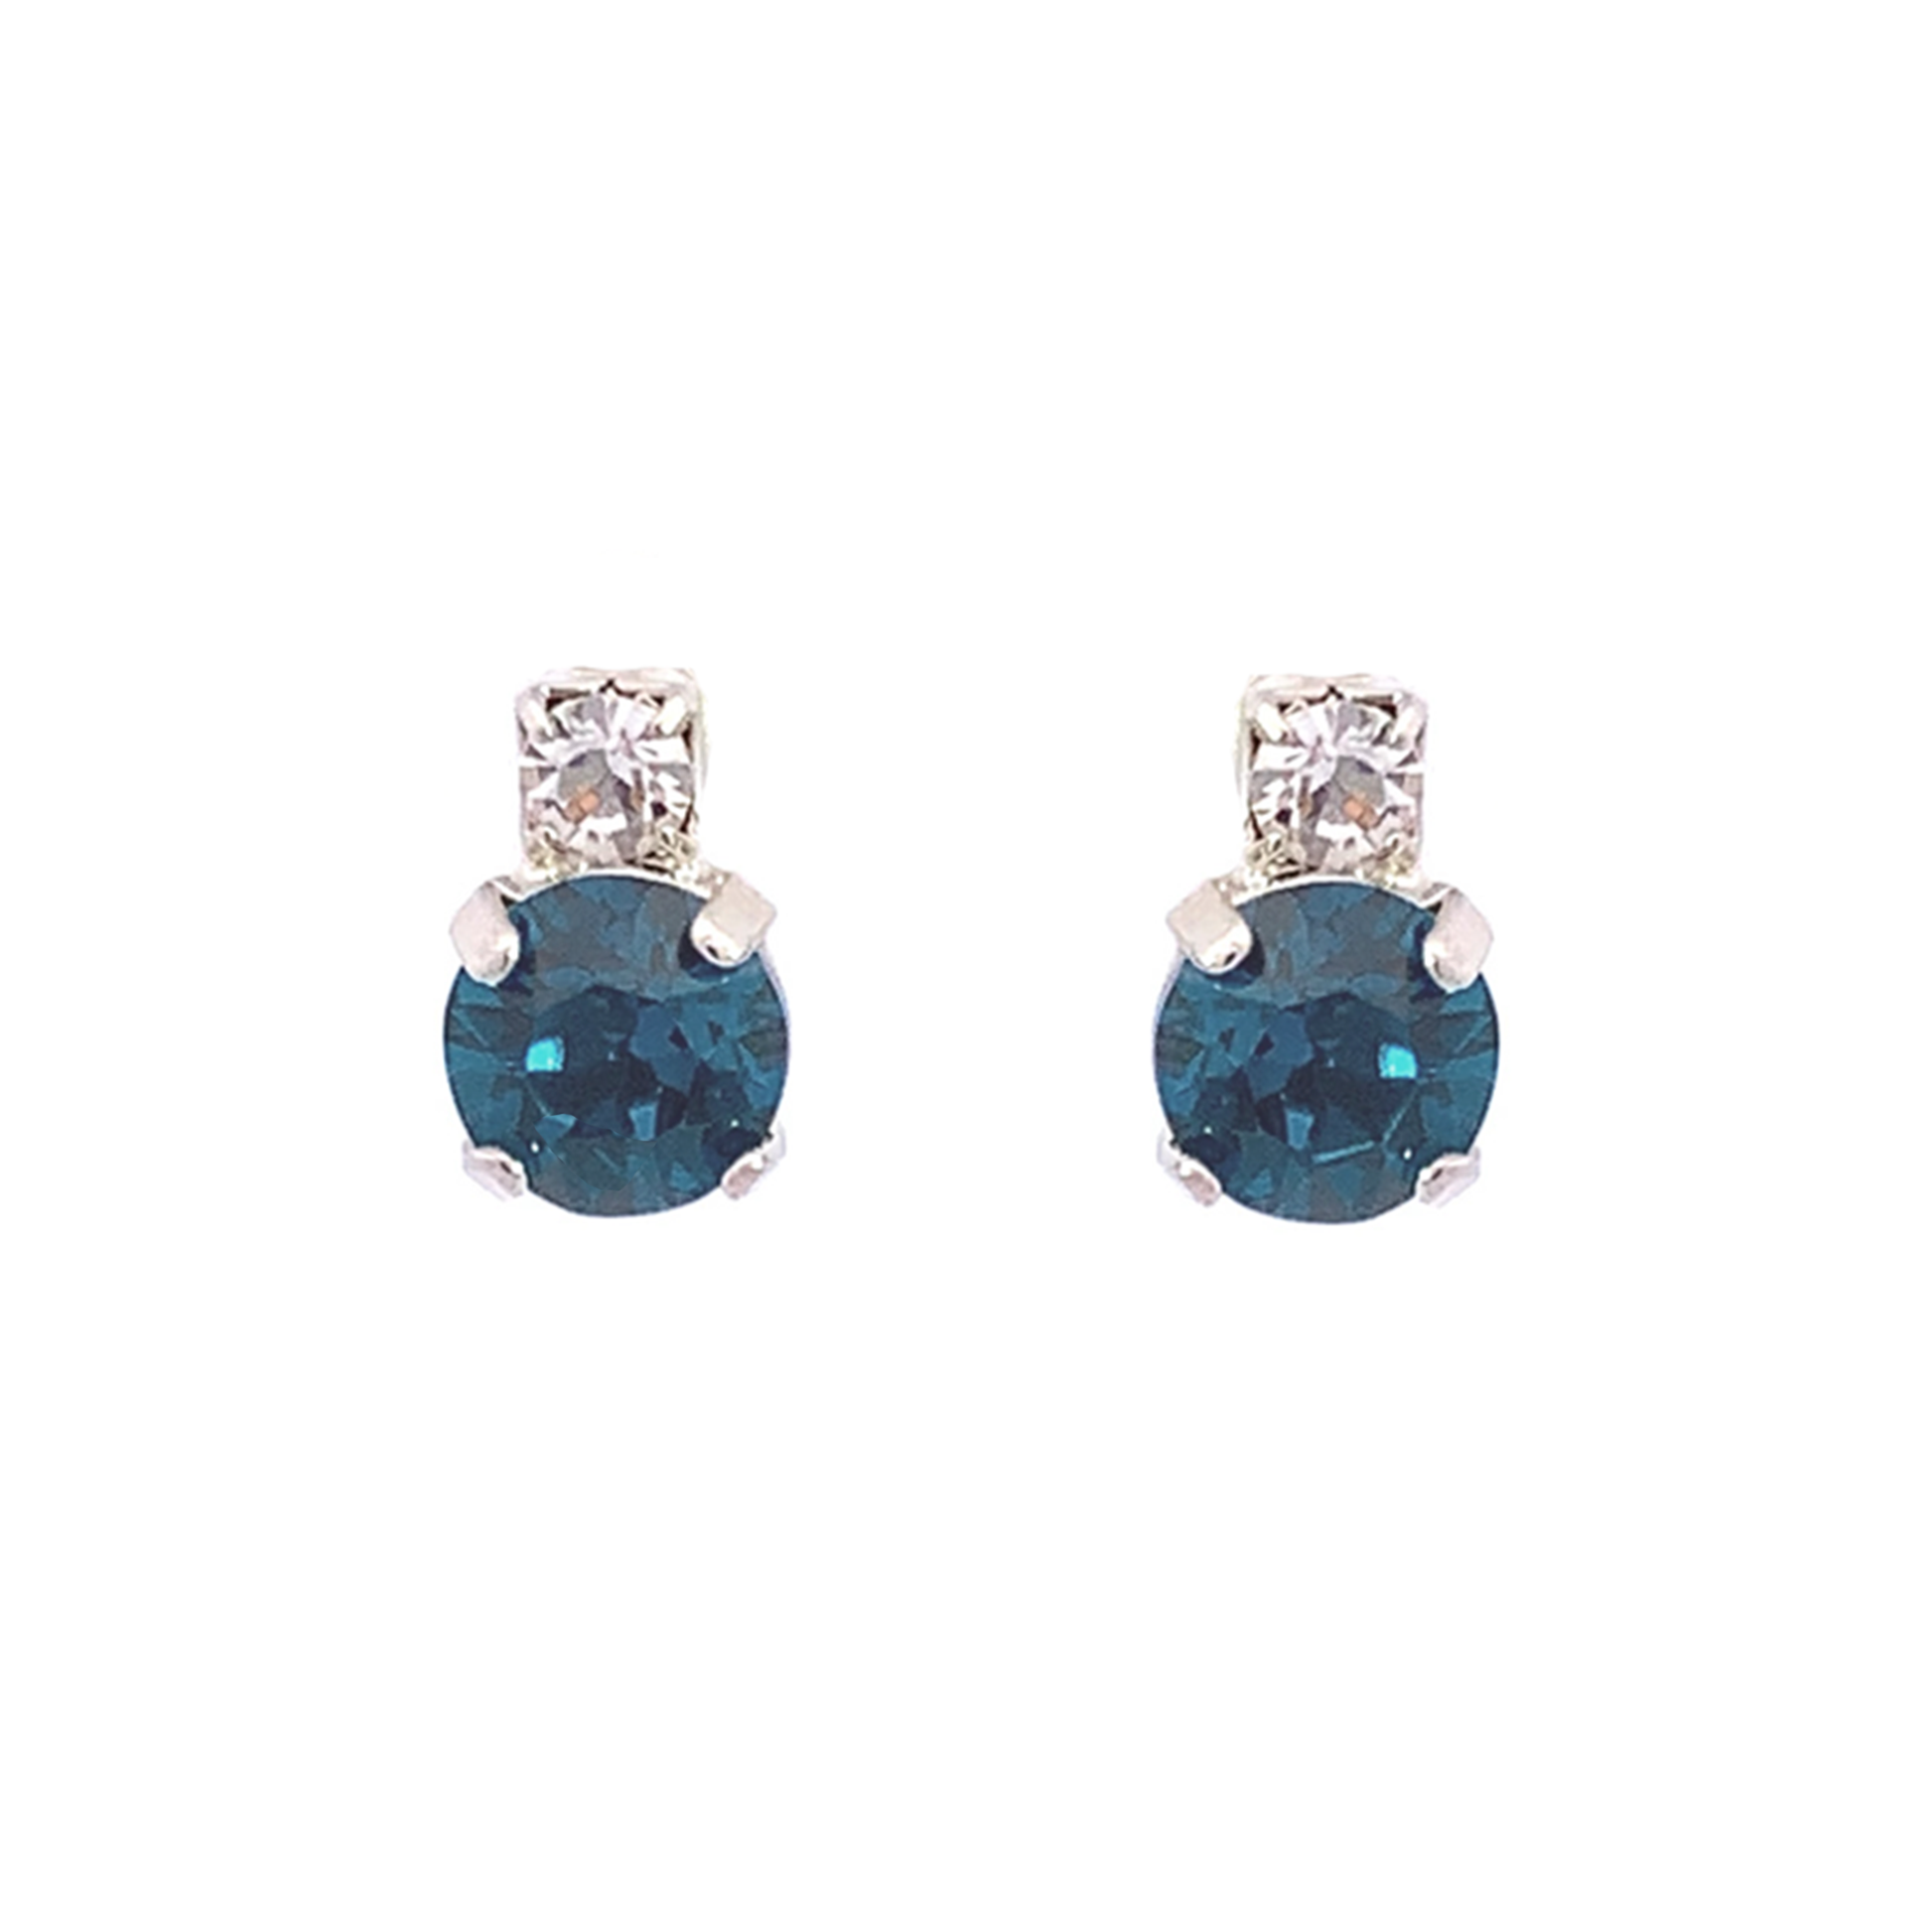 Blue zircon stud earrings silver